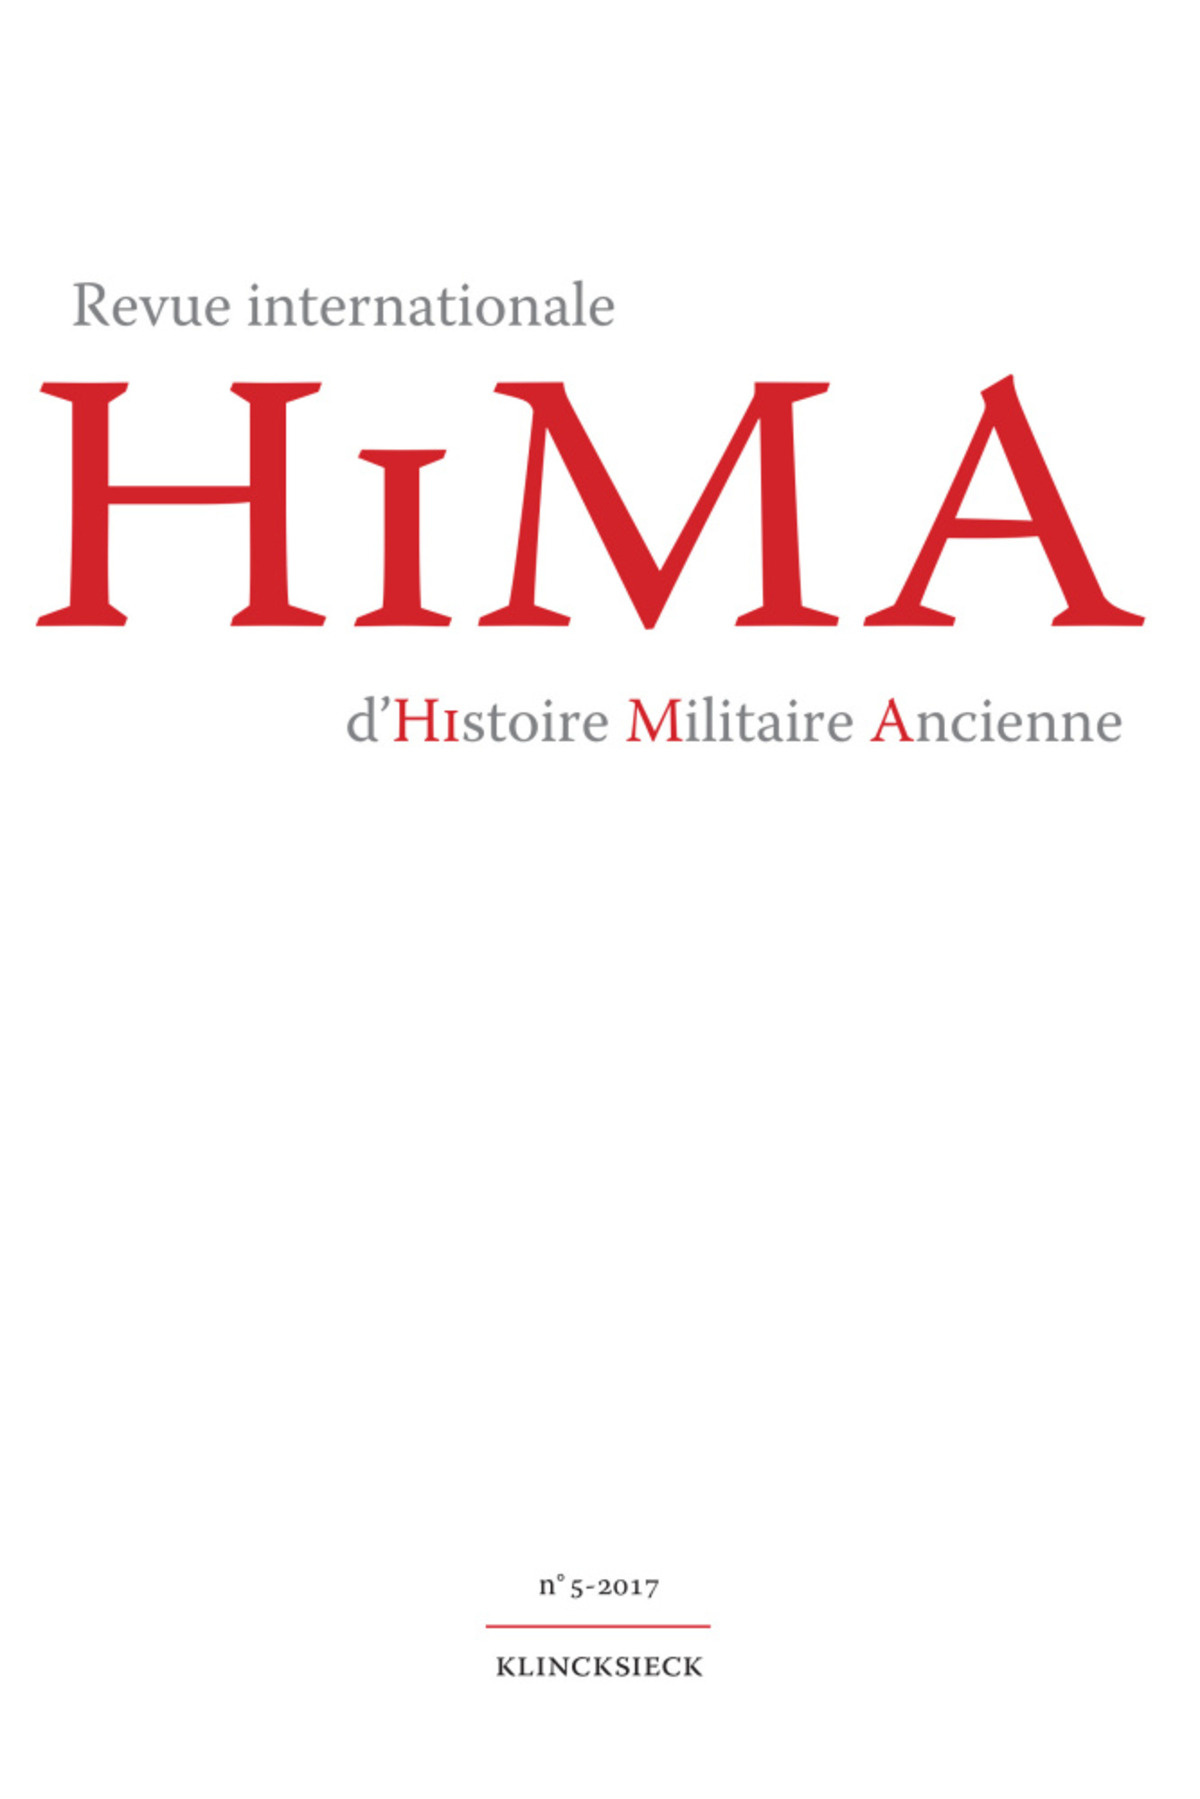 Revue internationale d'Histoire Militaire Ancienne. N°5/2017